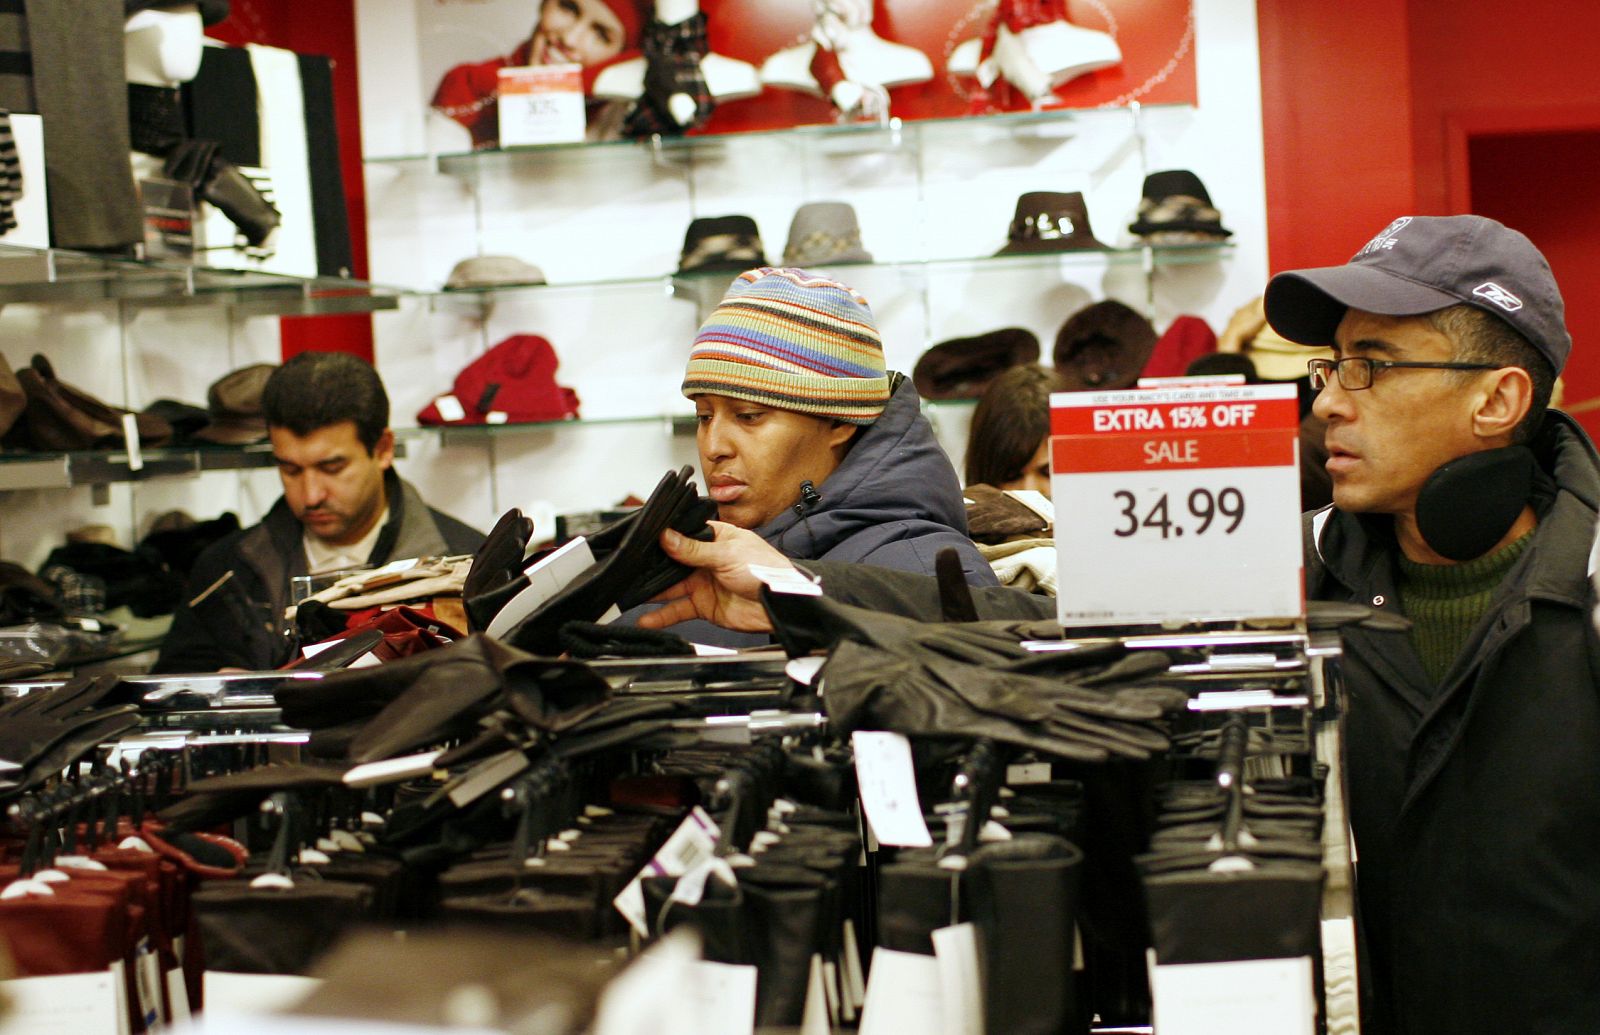 Varias personas observan los artículos en la tienda de Macy's en Nueva York durante la campaña navideña.